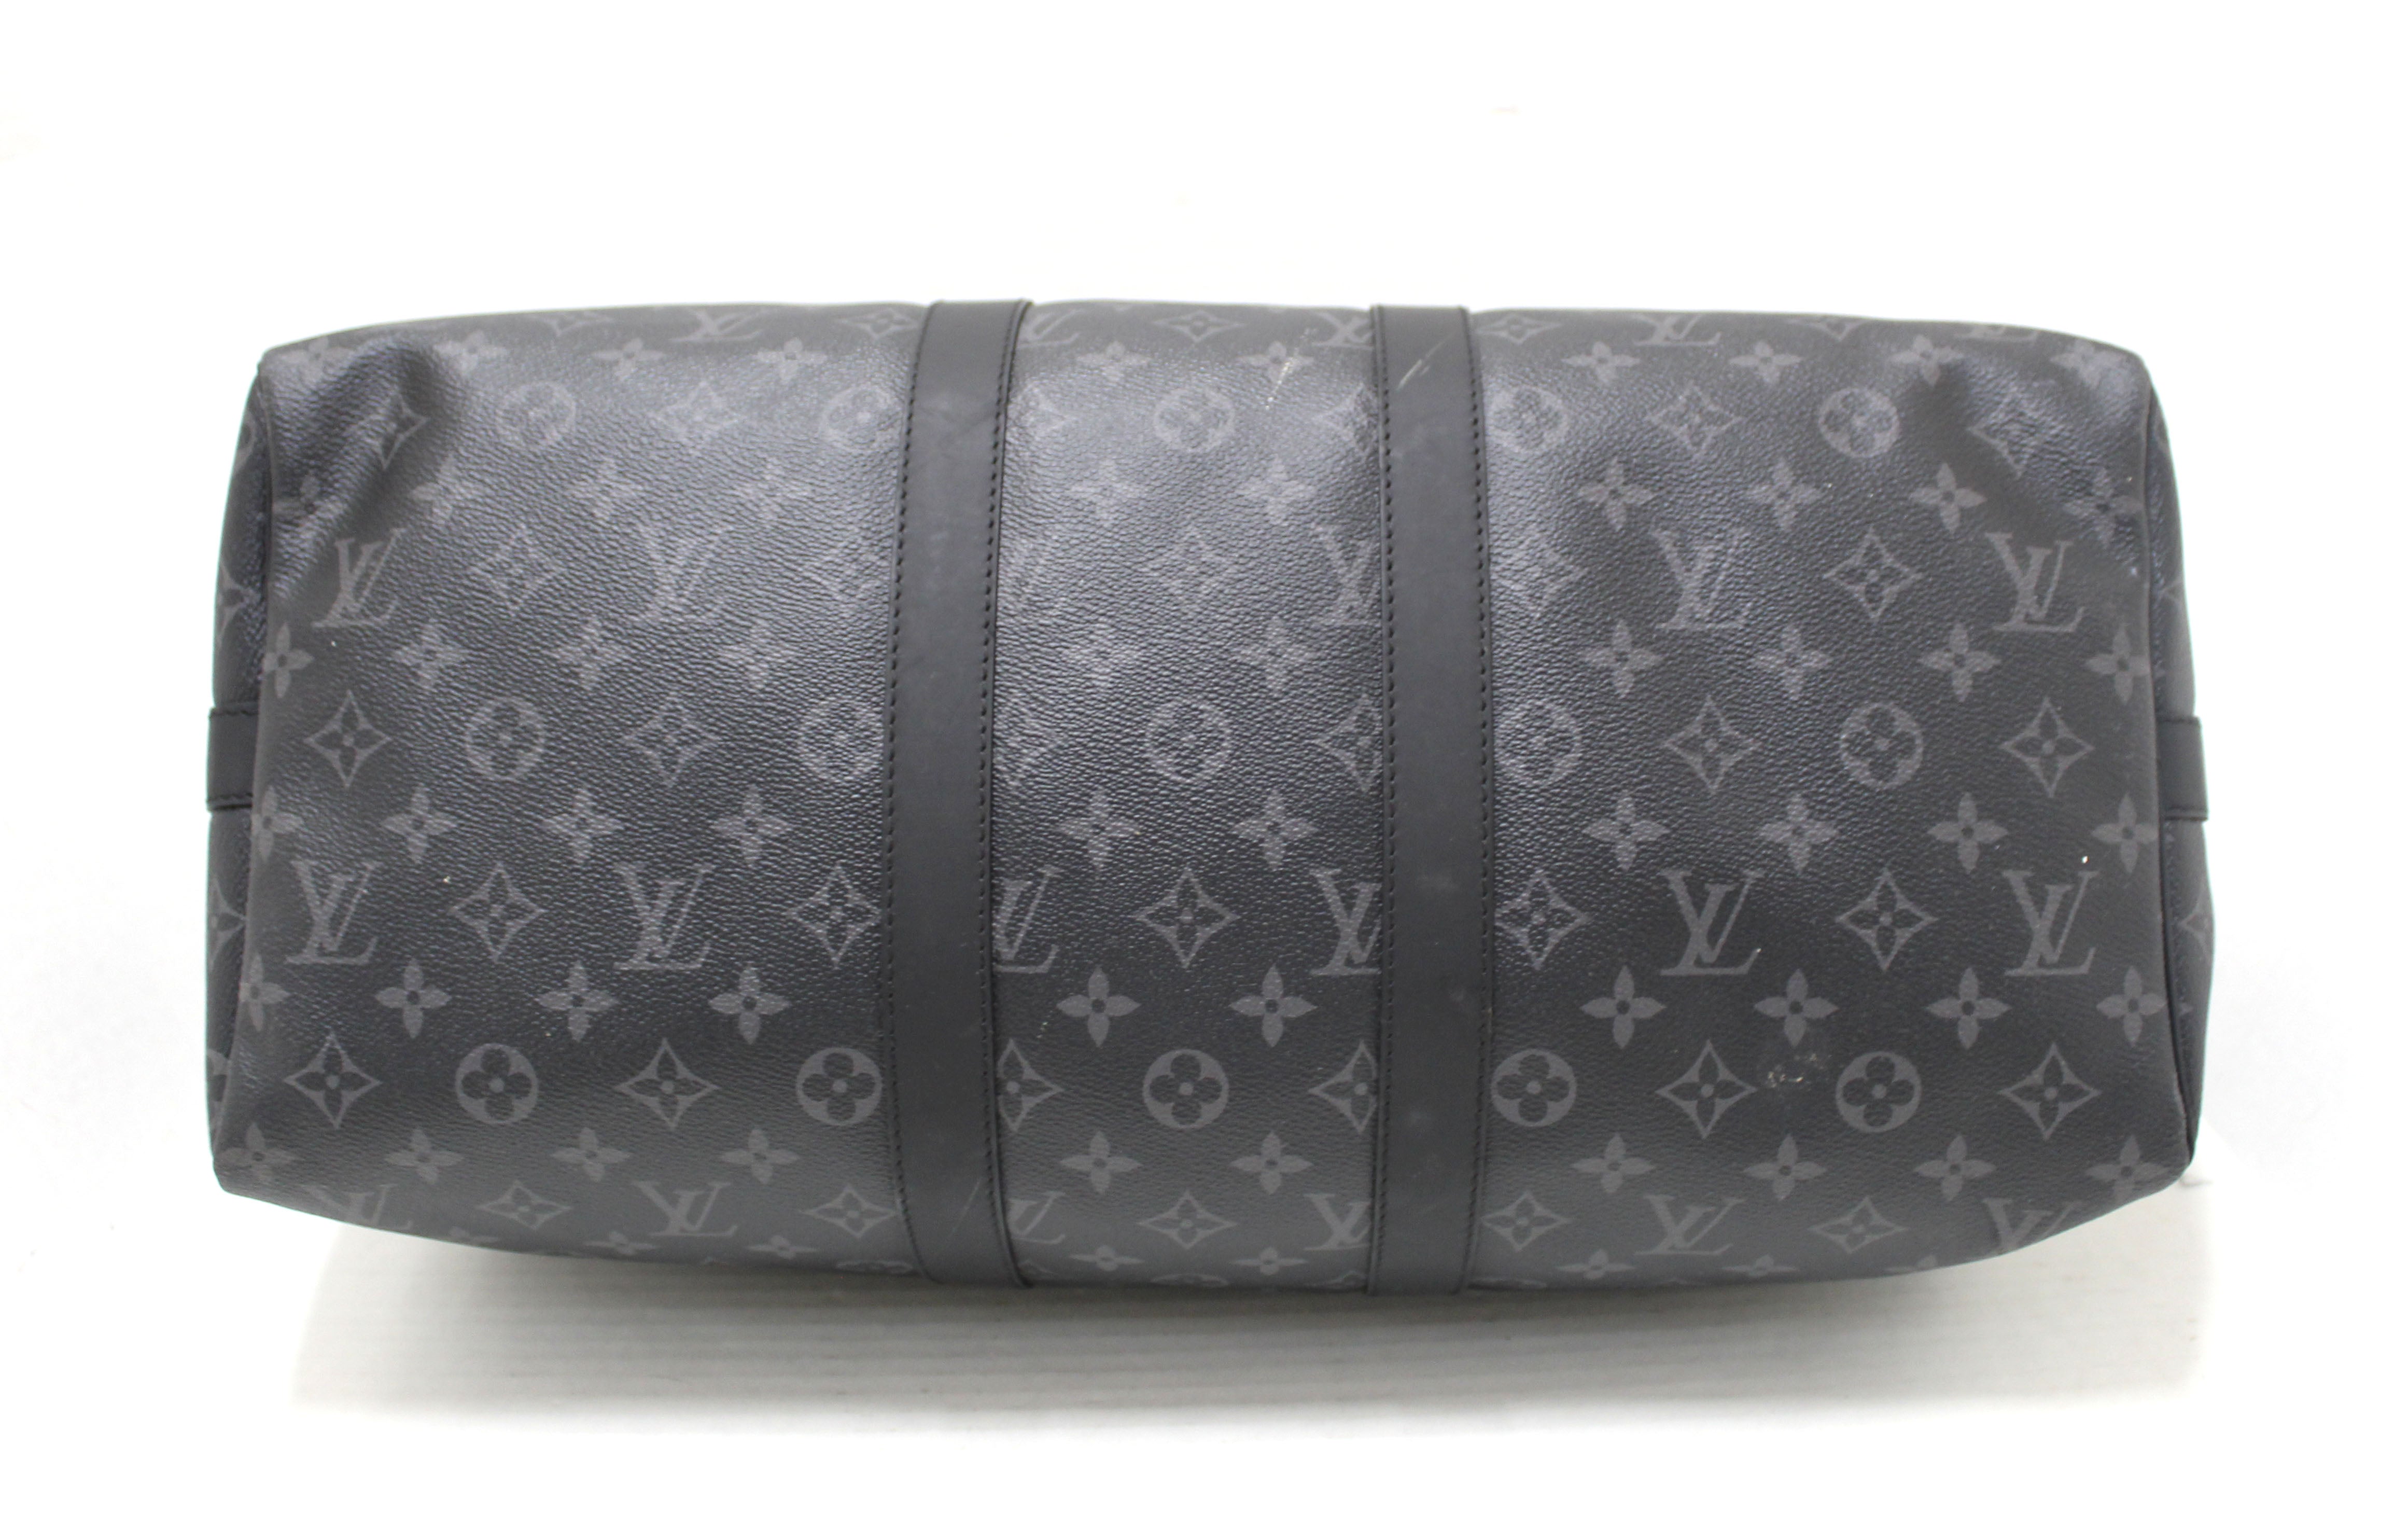 Authentic Louis Vuitton Monogram Eclipse Keepall Bandoulière 45 Travel Bag